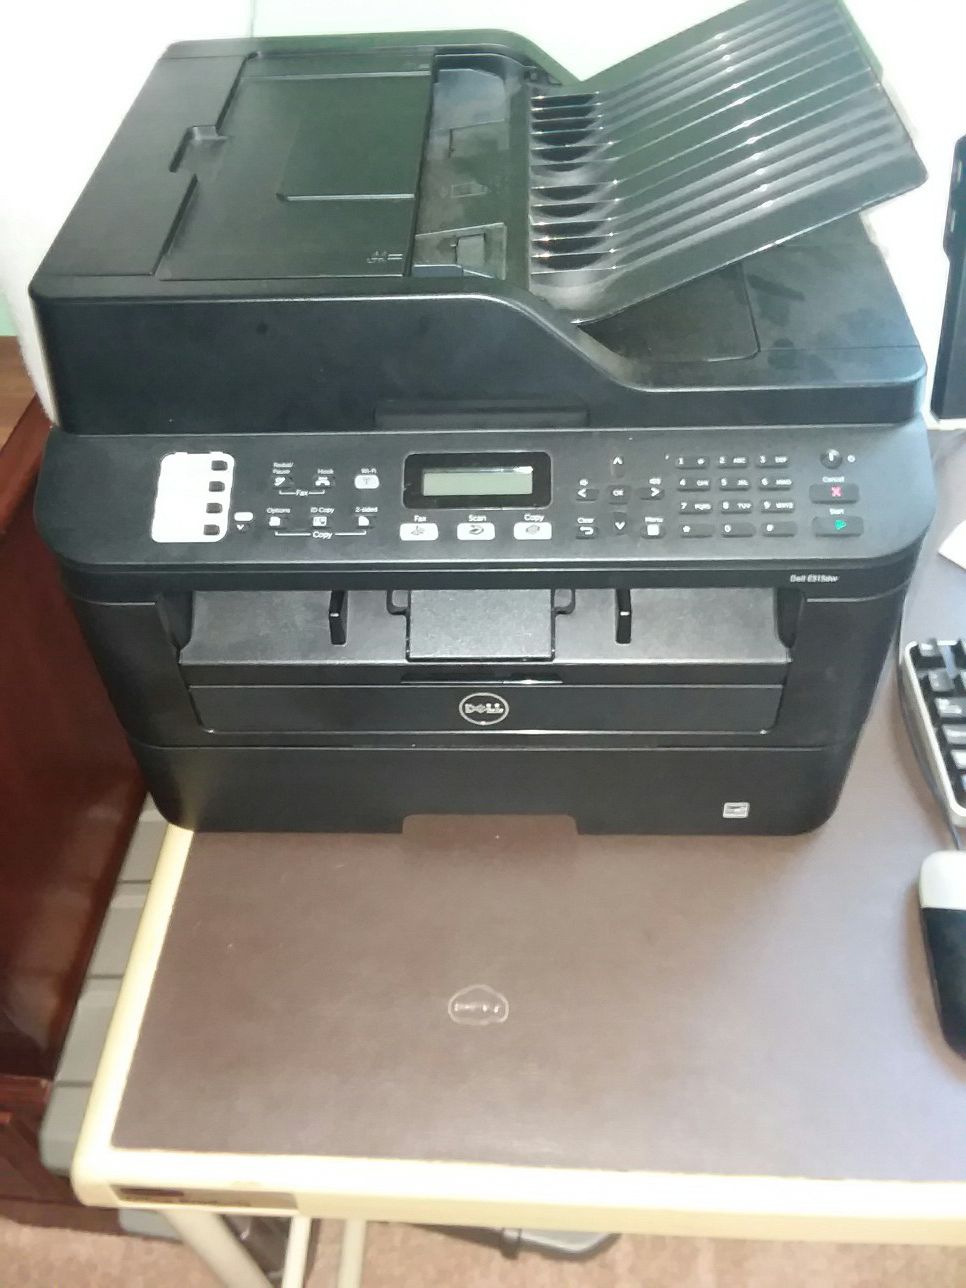 Dell e515dw all in one monoprinter